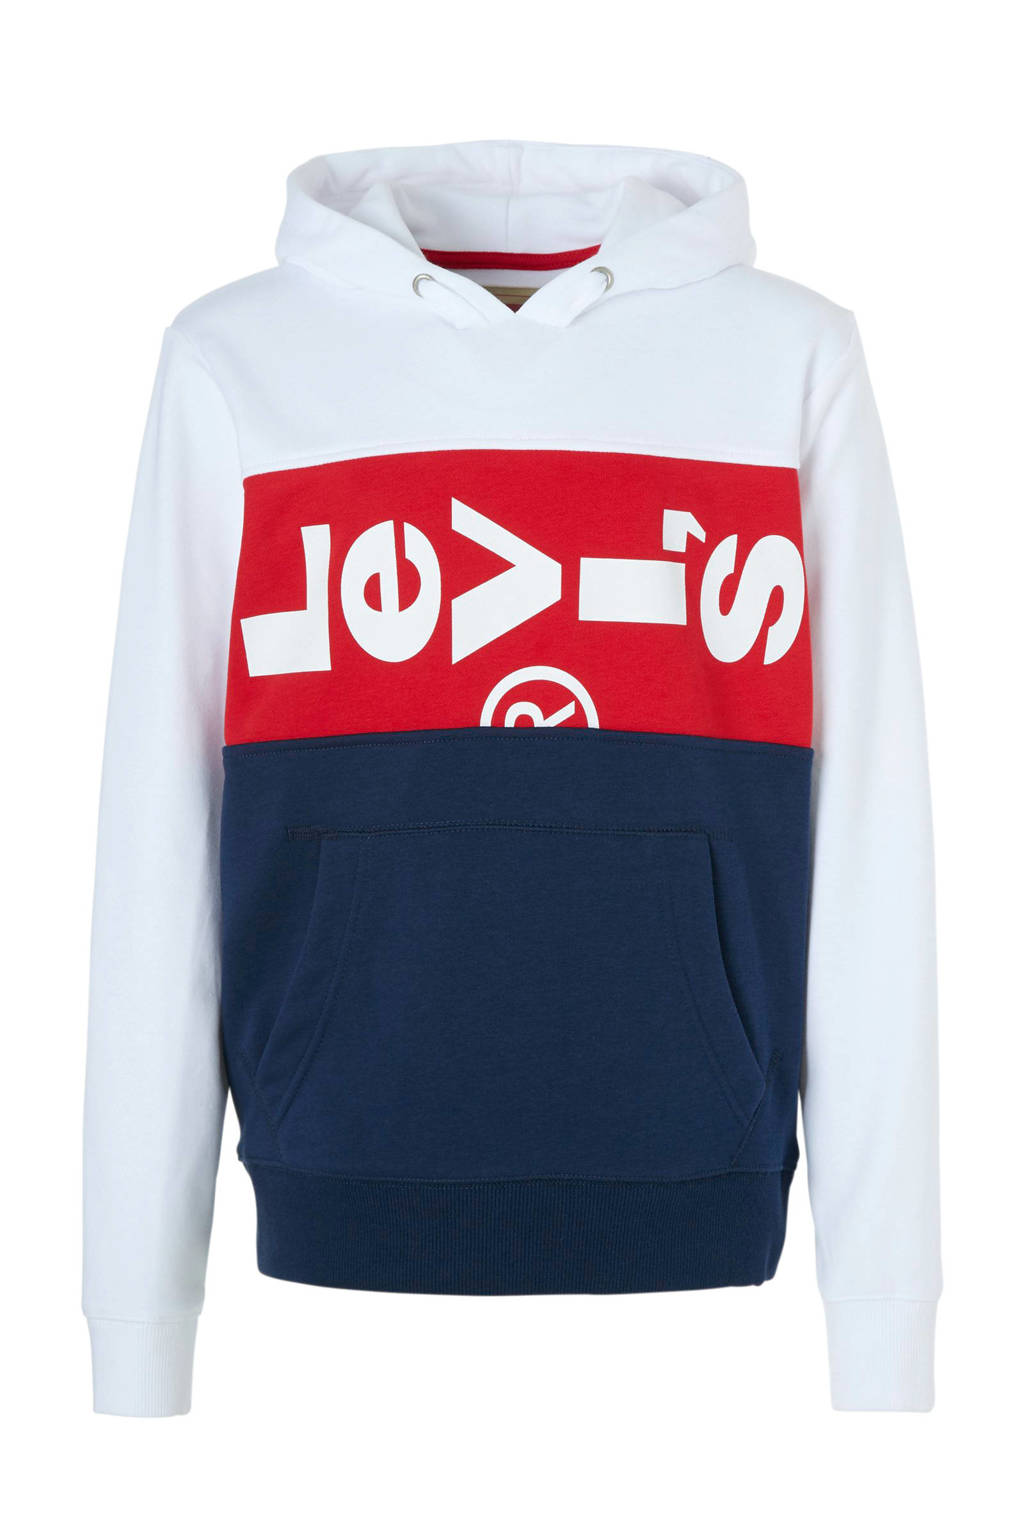 rijm spontaan Beweging Levi's Kids hoodie met logo wit/donkerblauw/rood | wehkamp